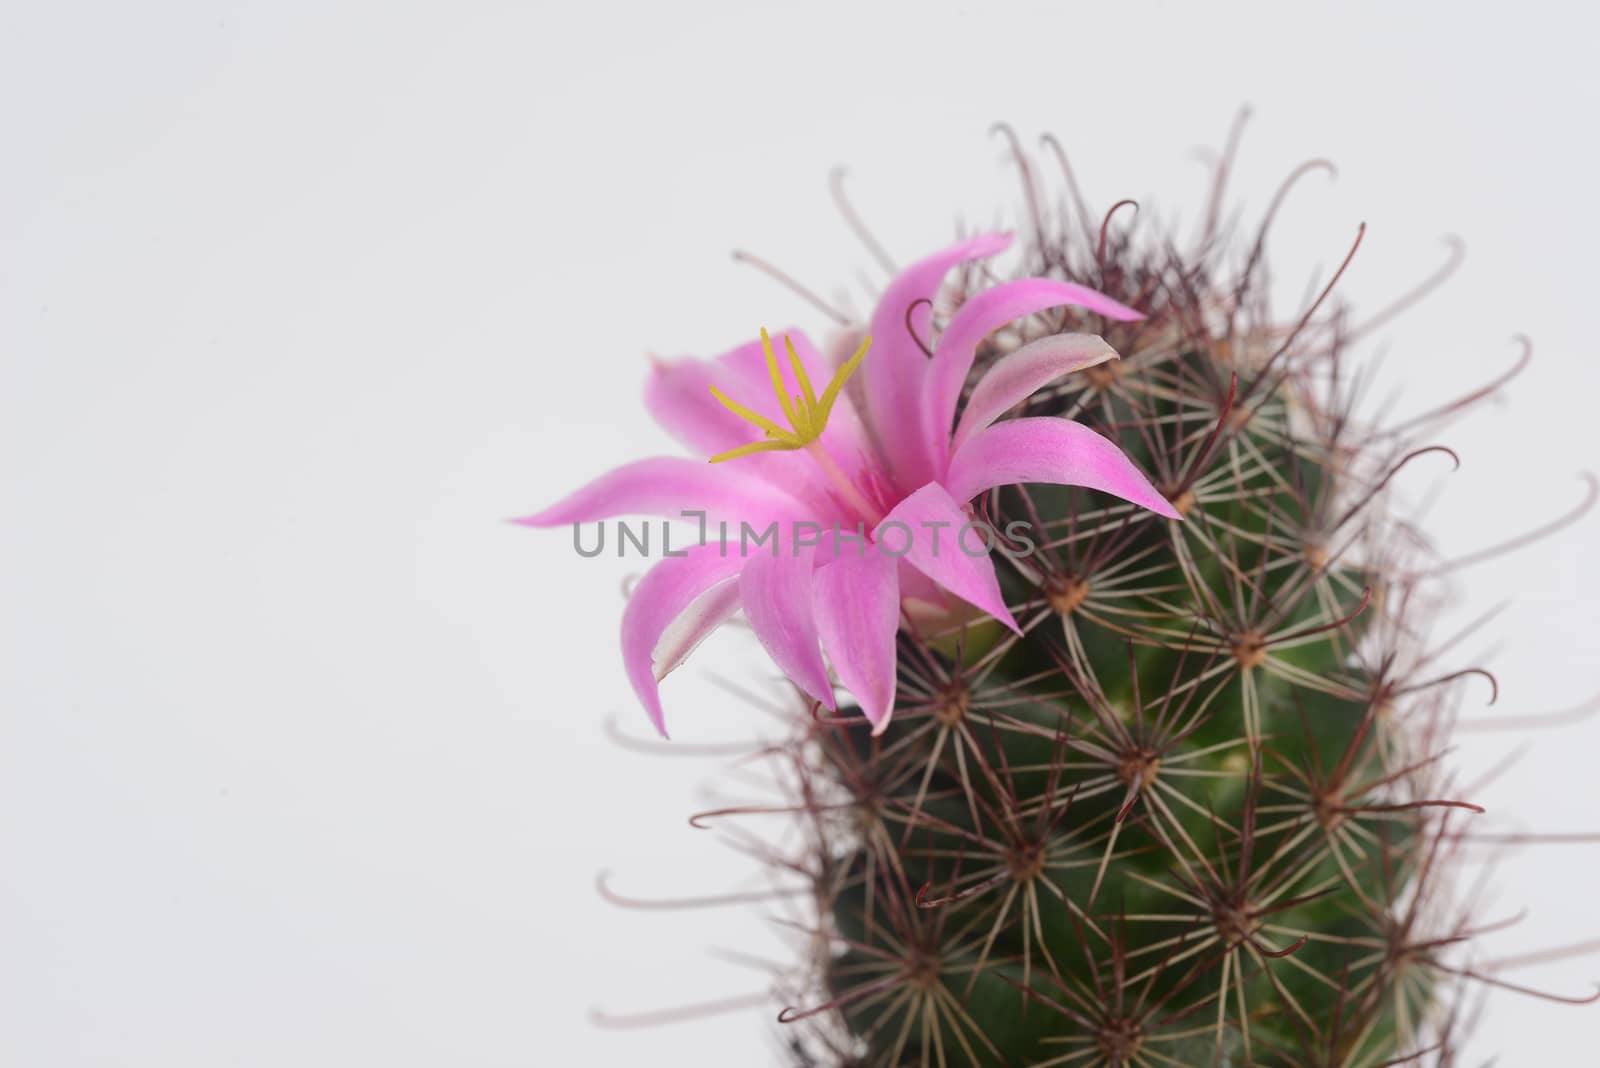 Mammillaria mazatlanensis cactus flower by ideation90